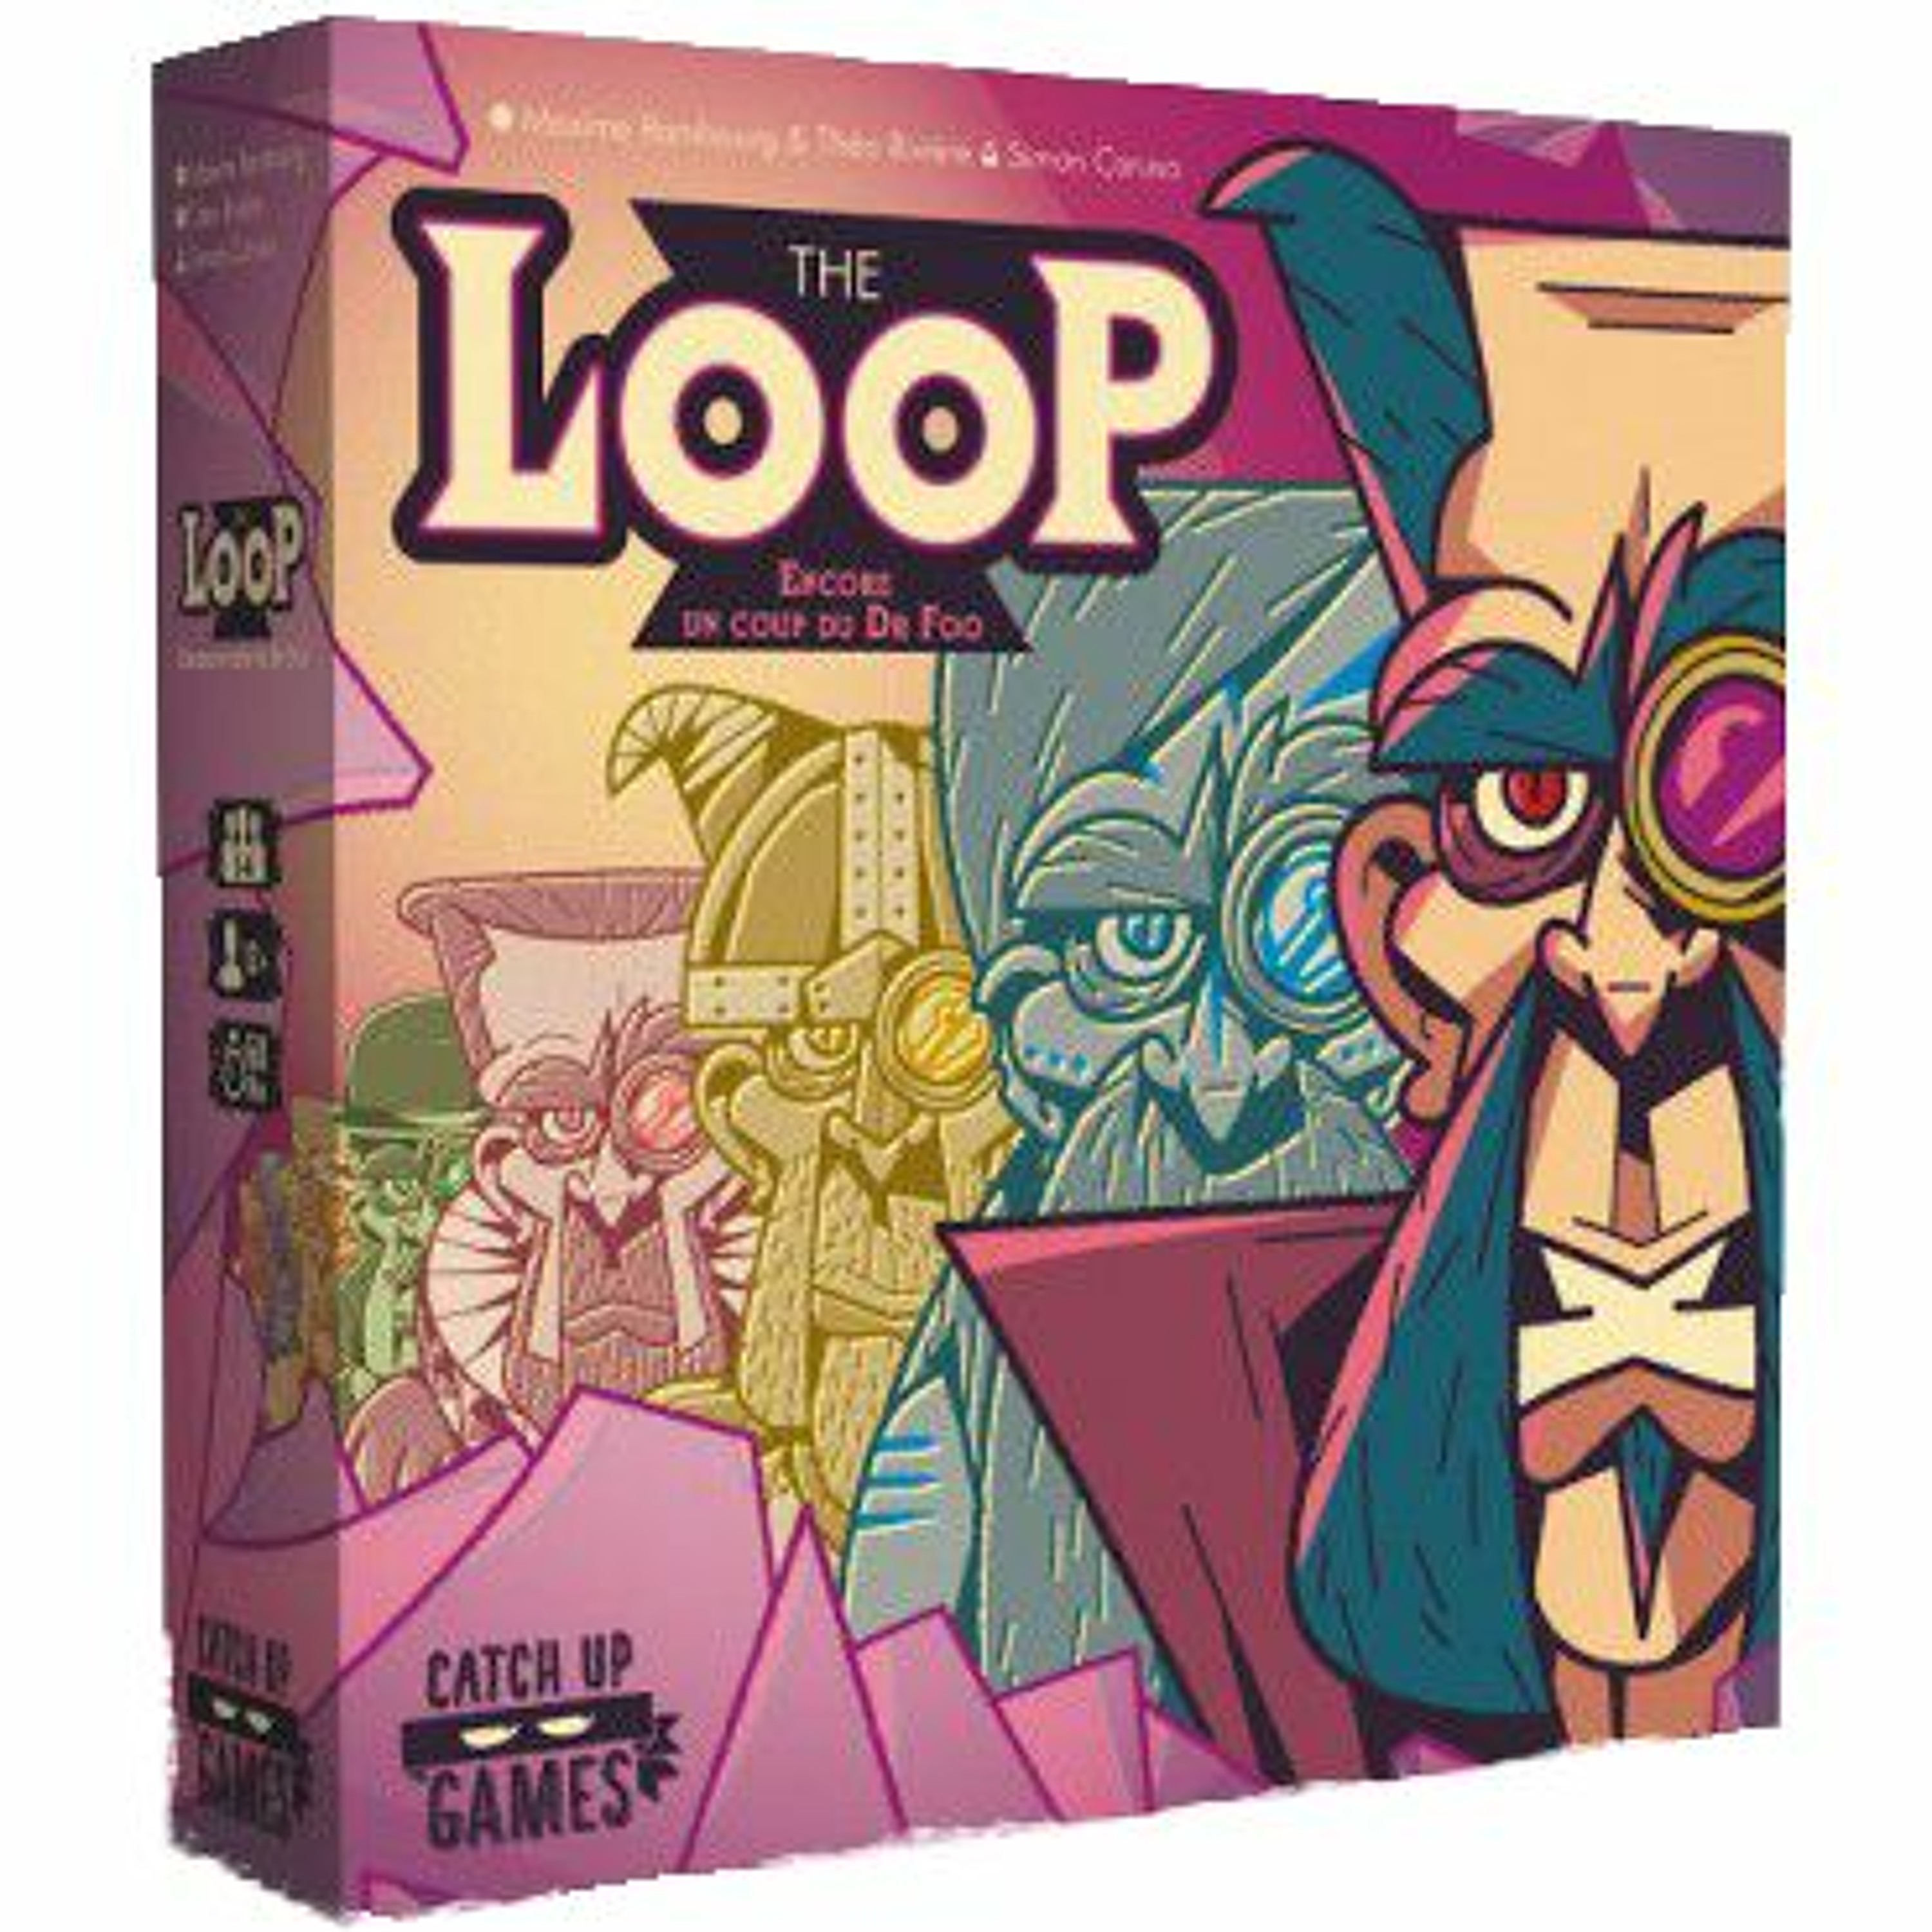 The Loop – Episode 4